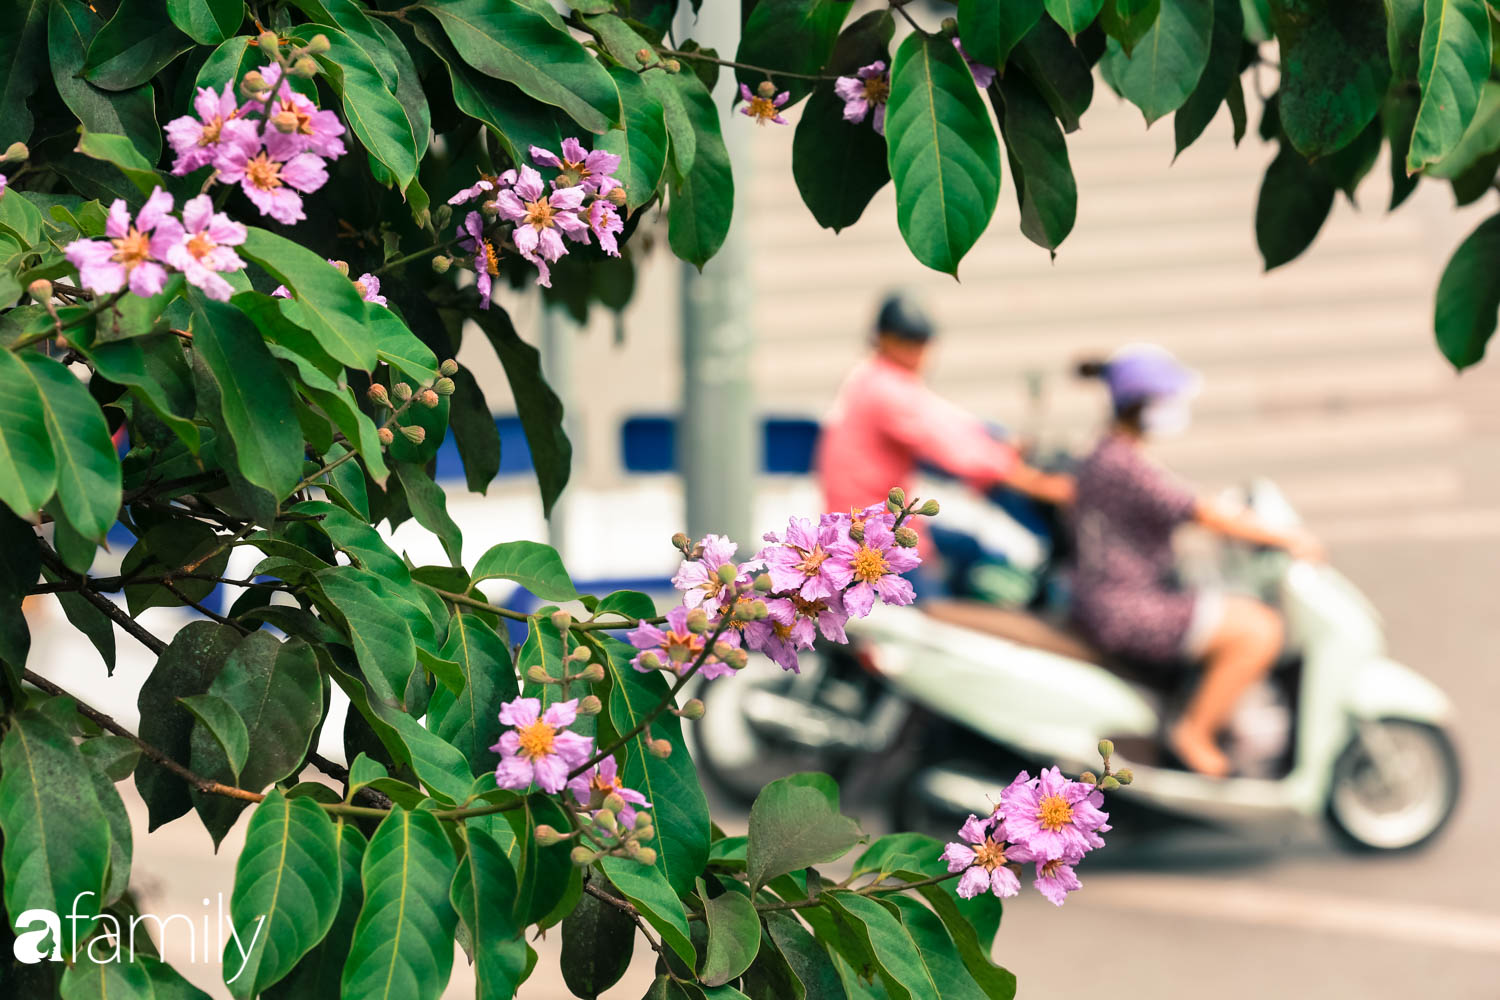 Trở lại cuộc sống bộn bề như trước, có mấy ai nhận ra Hà Nội đang trong một mùa hoa bằng lăng đẹp tuyệt vời - Ảnh 9.